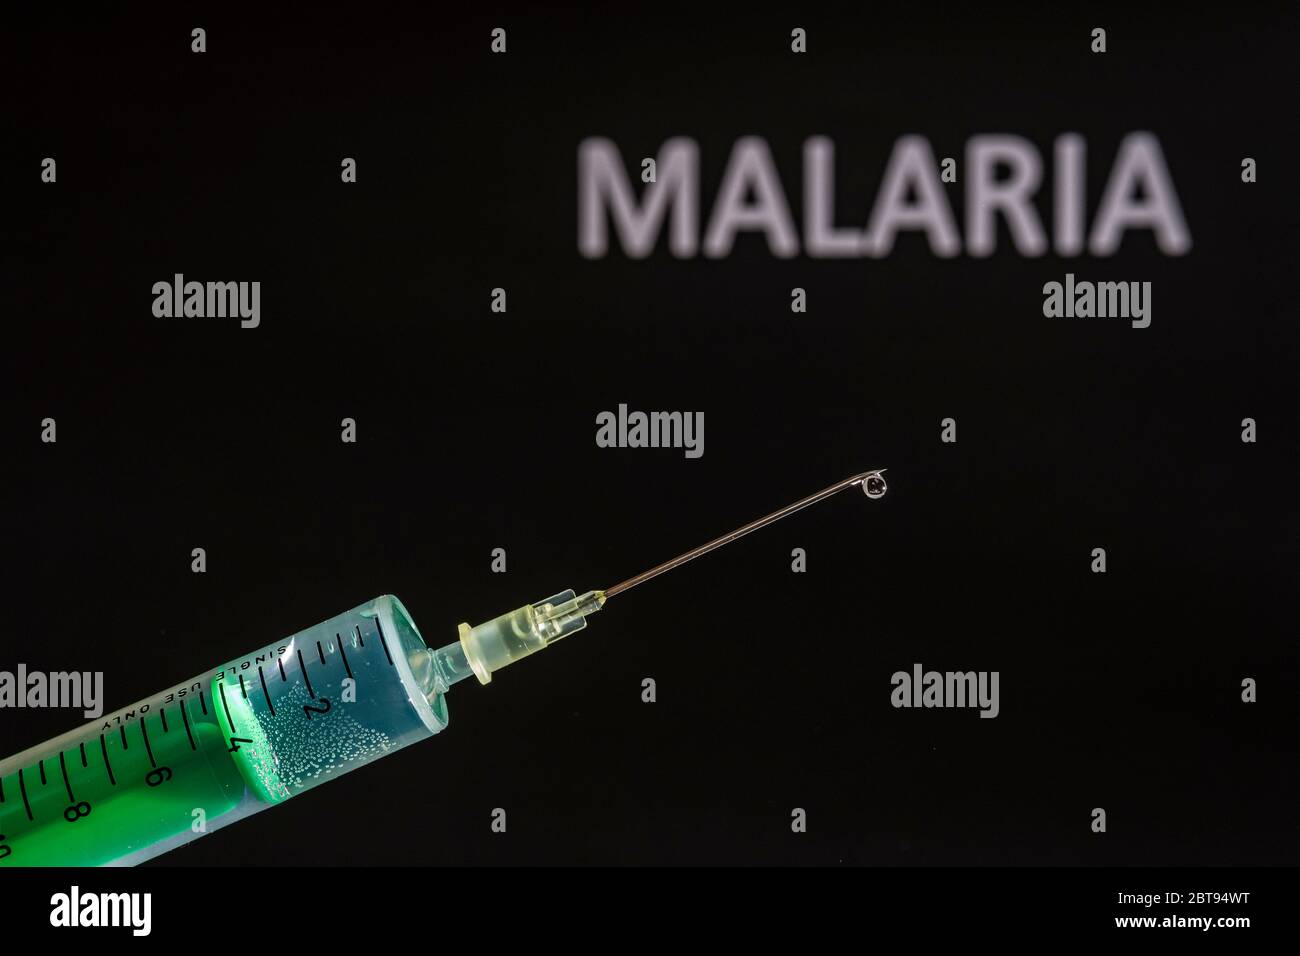 Diese Abbildung zeigt eine Einweg-Spritze mit hypodermischer Nadel, MALARIA auf einer schwarzen Tafel dahinter geschrieben Stockfoto